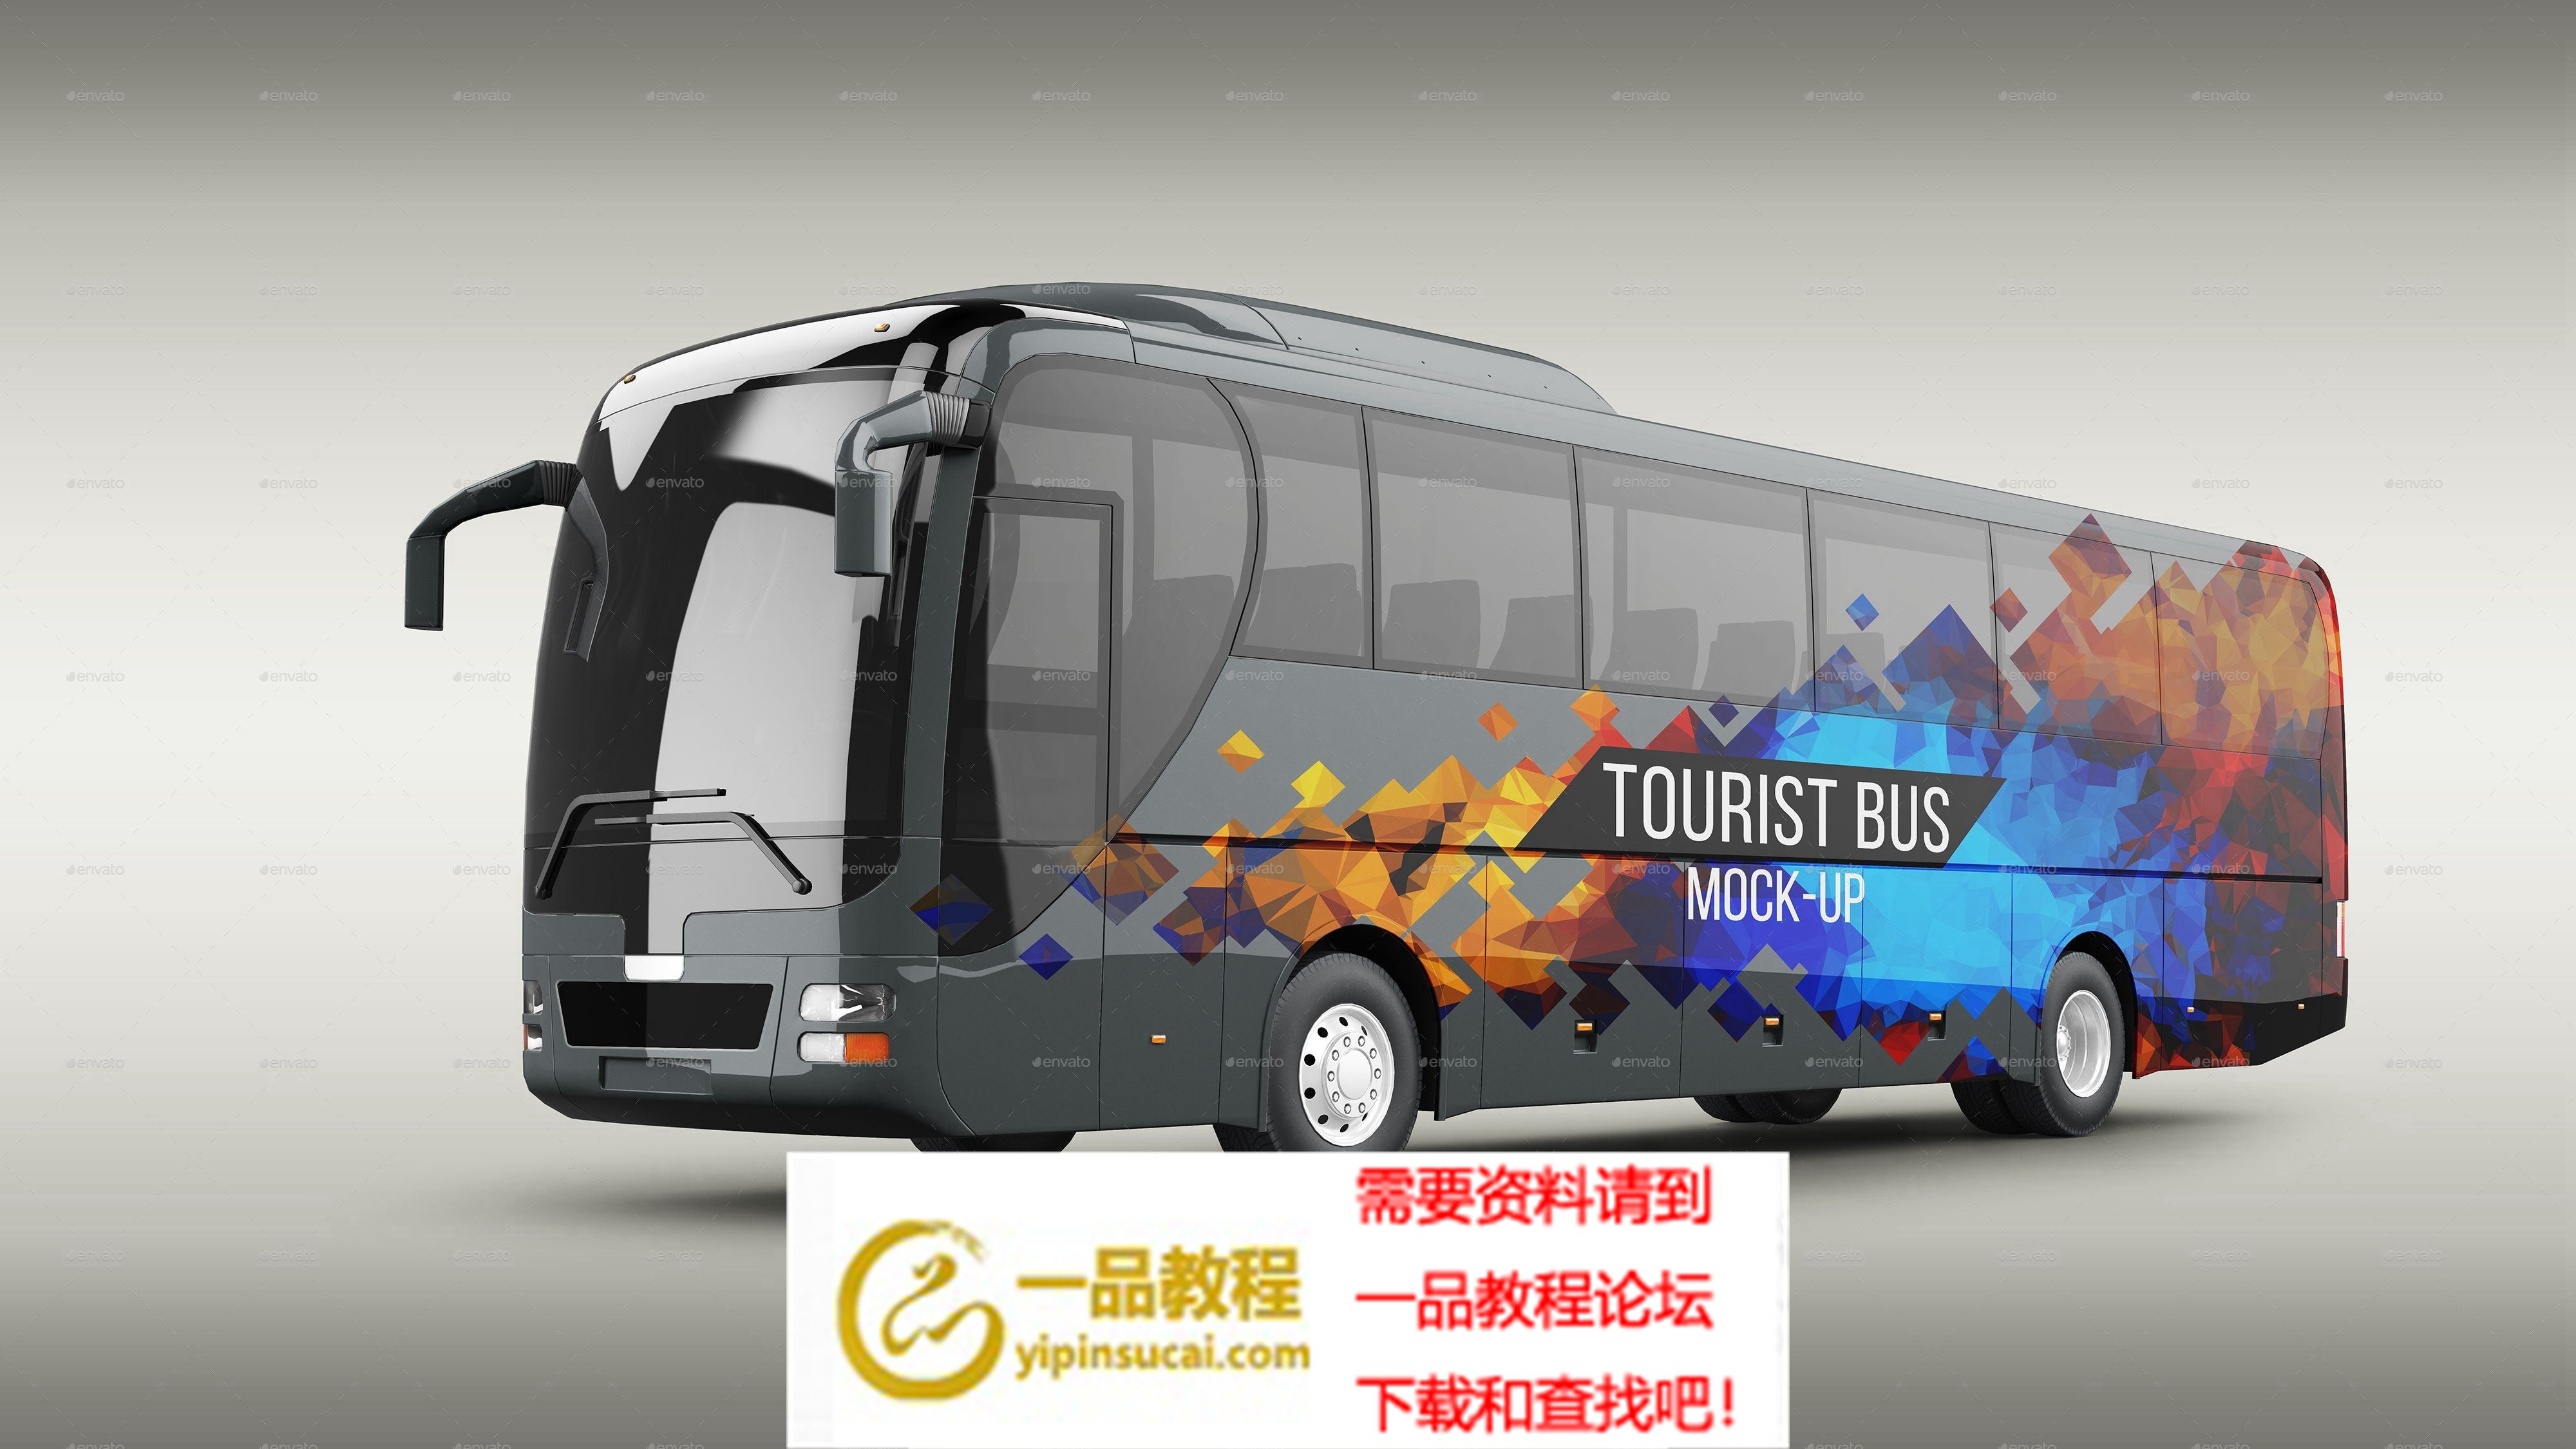 旅游巴士车体广告展示psd模板tourist-bus-mockup